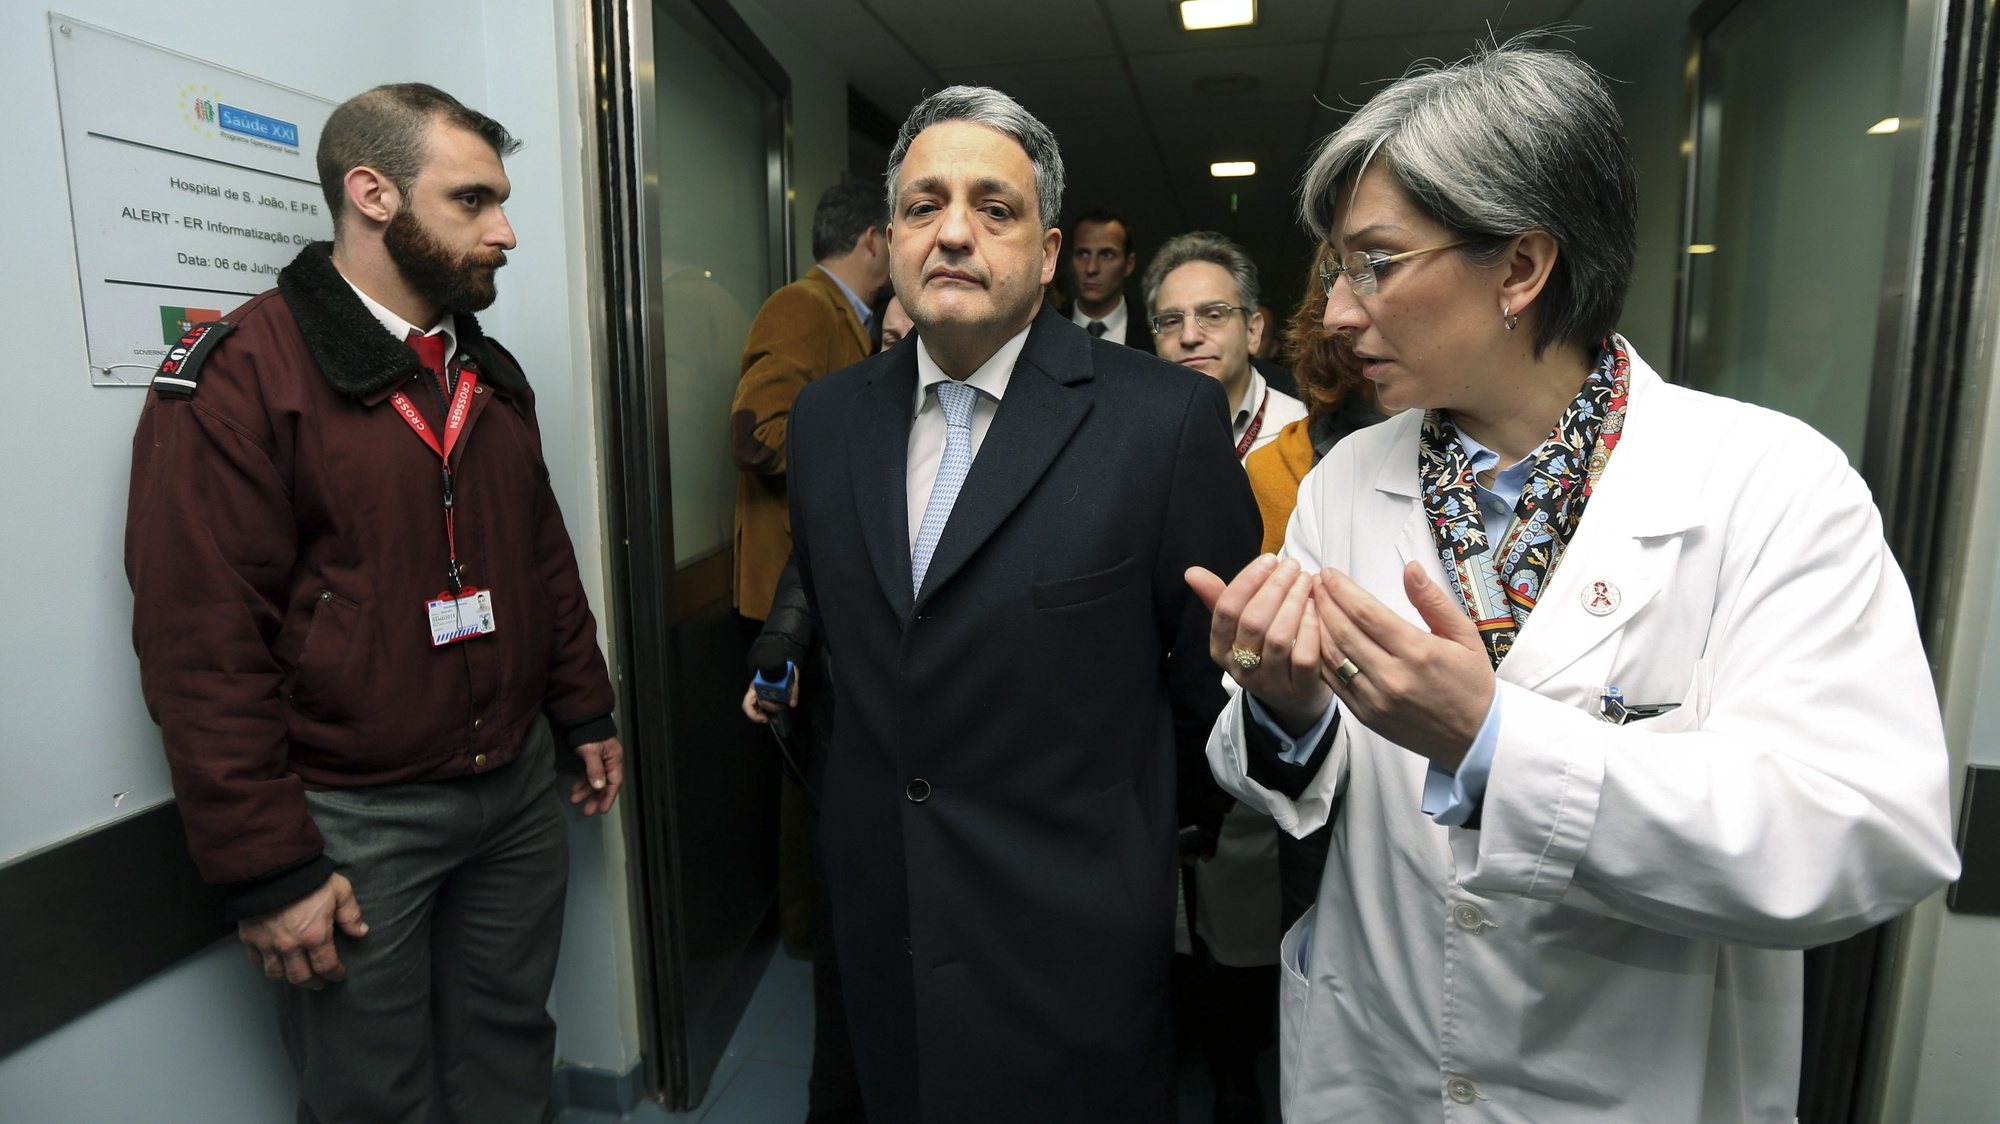 O Ministro da Saúde, Paulo Macedo (C), acompanhado por Margarida Tavares, a diretora clínica (D), visita o Hospital de São João, no Porto, 27 janeiro 2015. ESTELA SILVA/LUSA